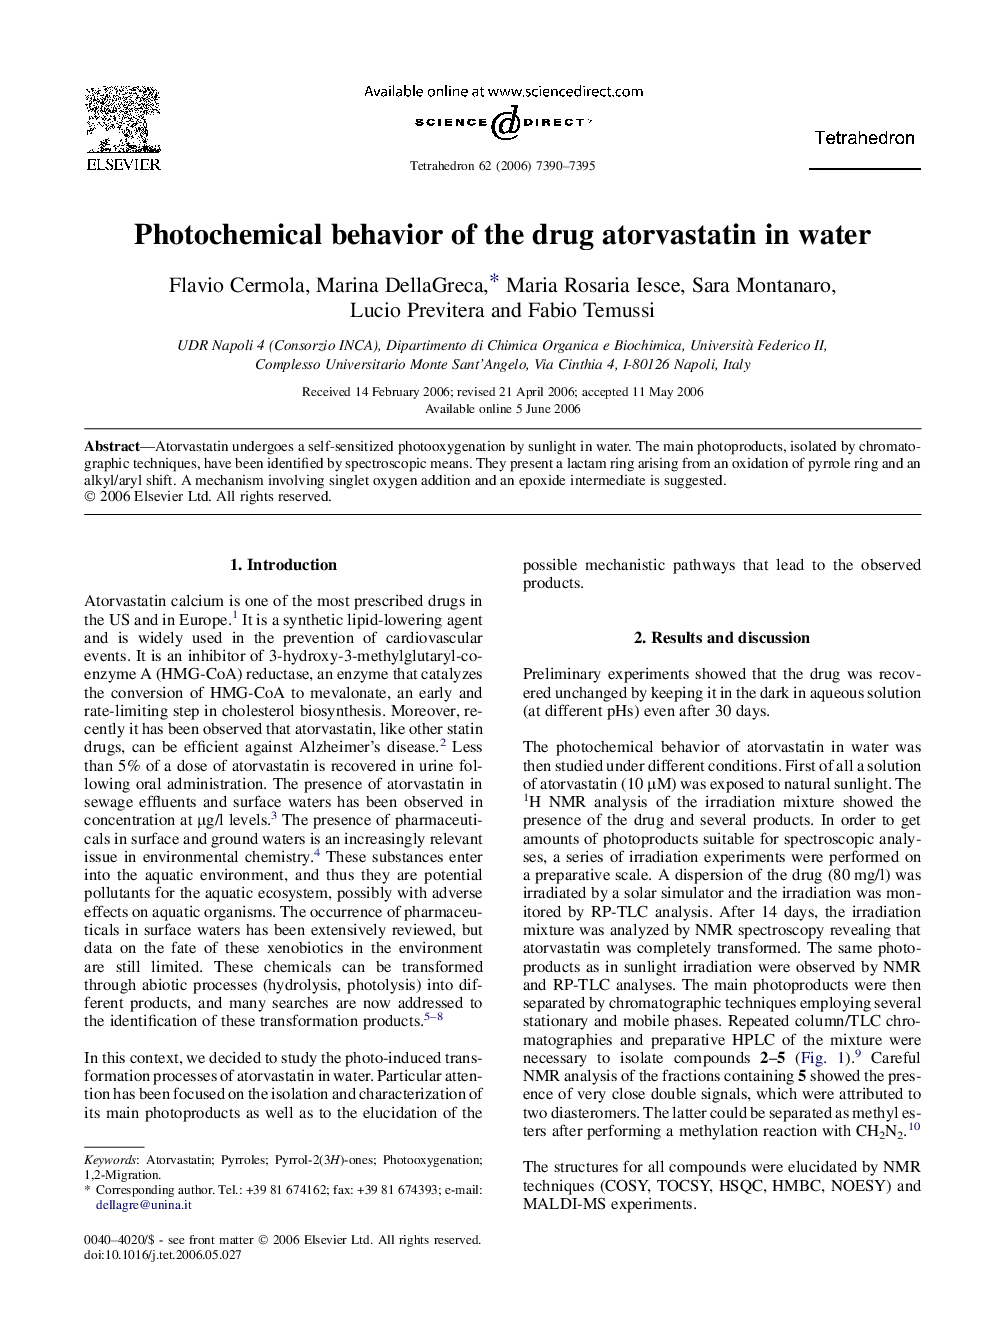 Photochemical behavior of the drug atorvastatin in water